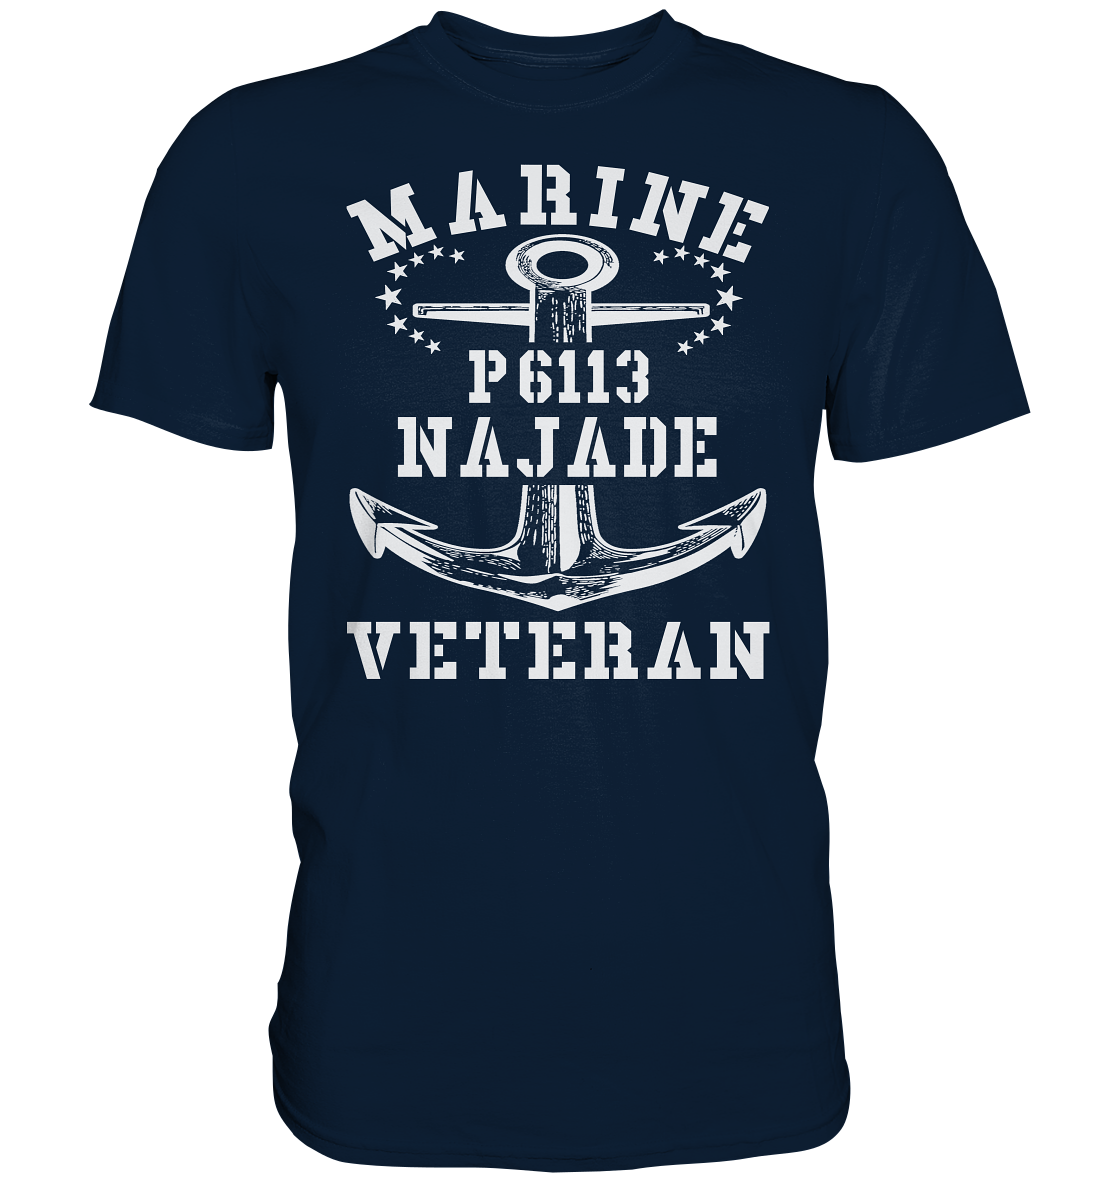 U-Jagdboot P6113 NAJADE Marine Veteran - Premium Shirt